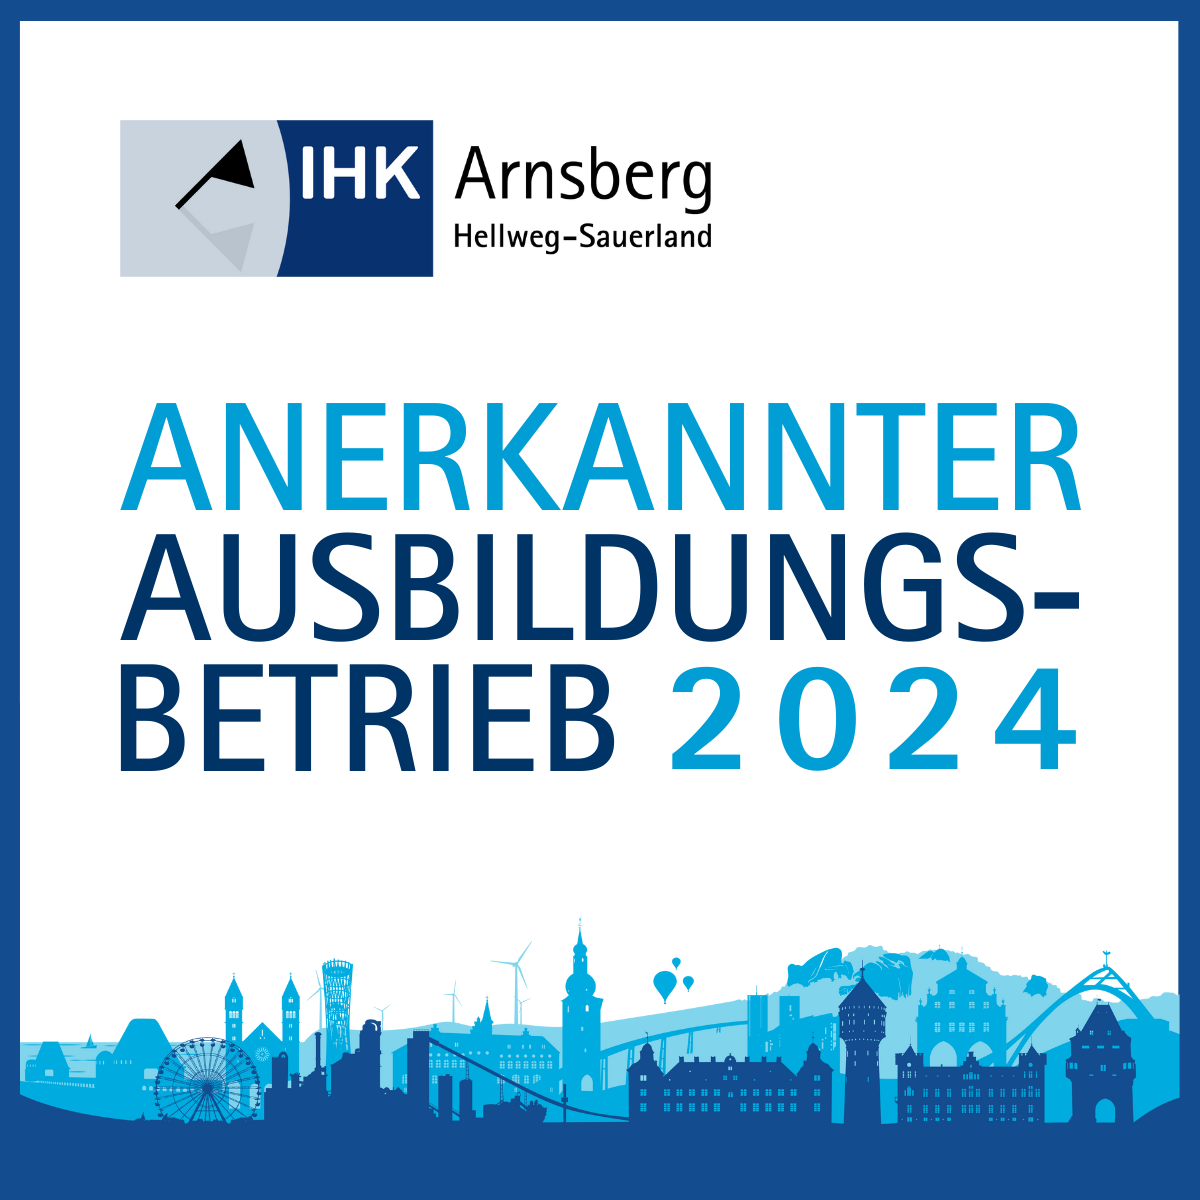 Info-Flyer der IHK-Arnsberg, mi der Aufschrift: "ANERKANNTER AUSBILDUNGSBETRIEB 2024"